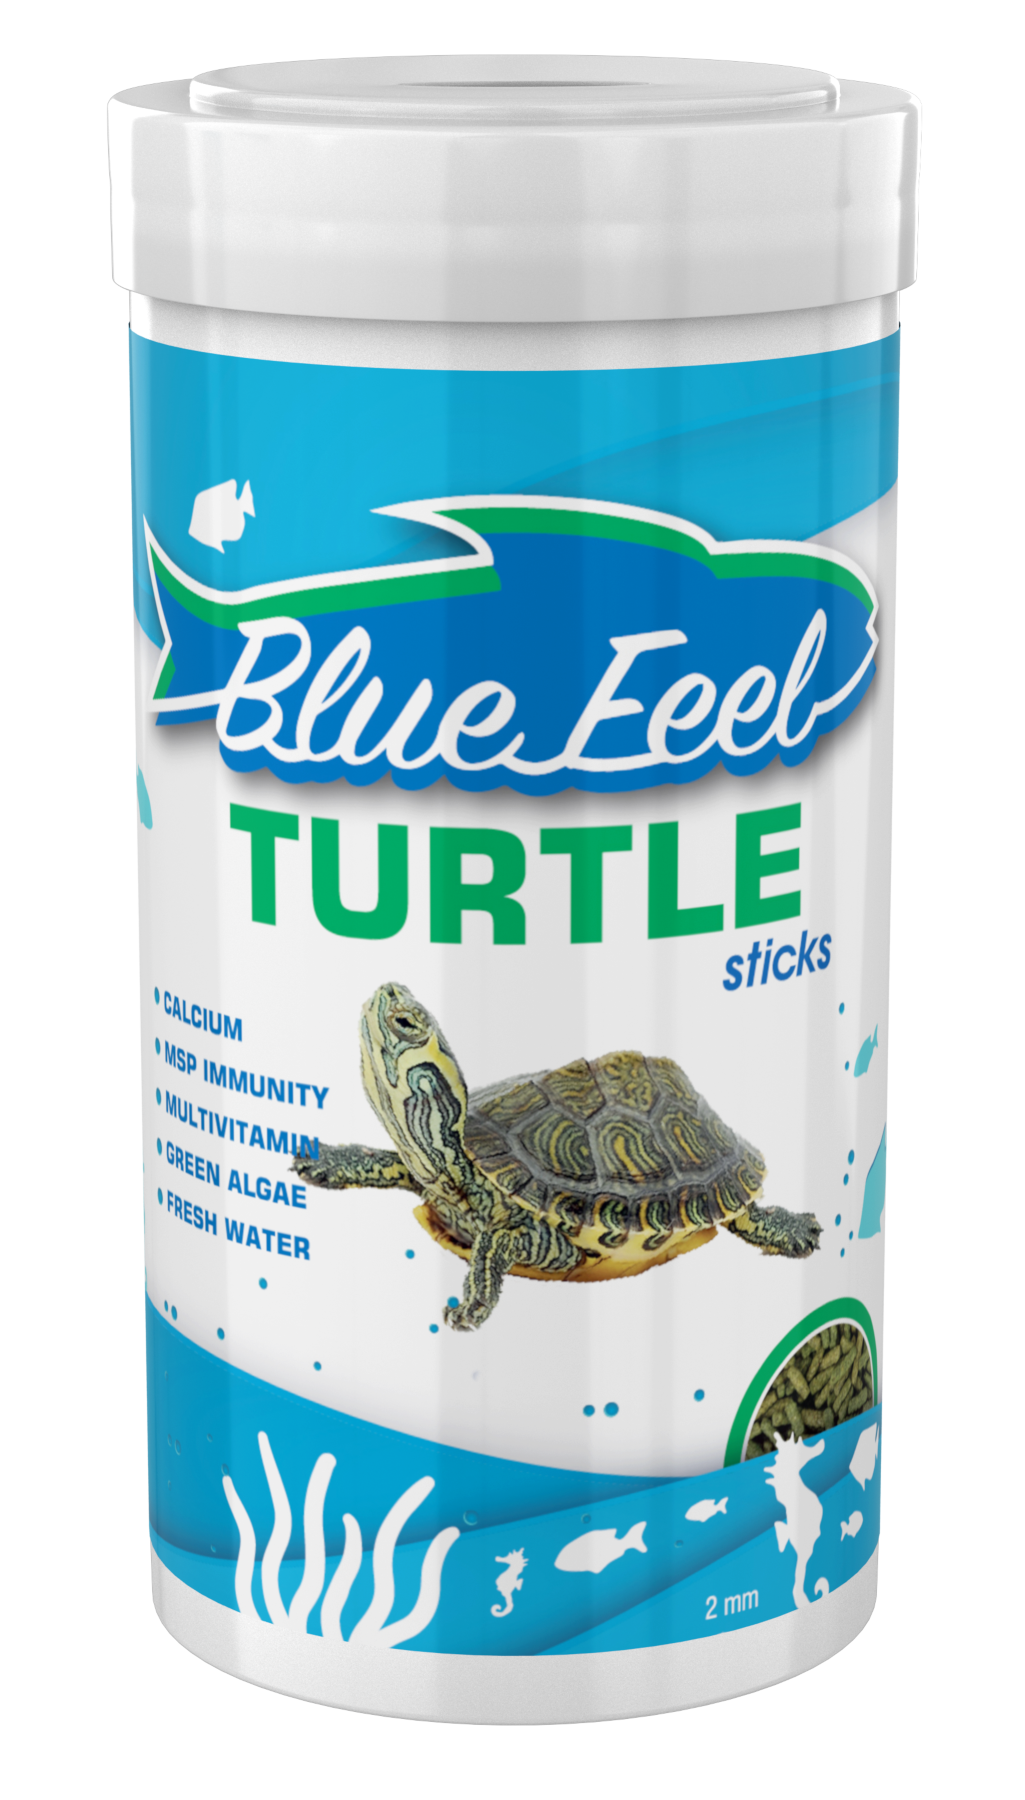 Amore Turtle Sticks 4x250ml + BlueFeel Turtle 4x250ml + Lotus Turtle 4x250ml Kutu Kaplumbağa Yemi